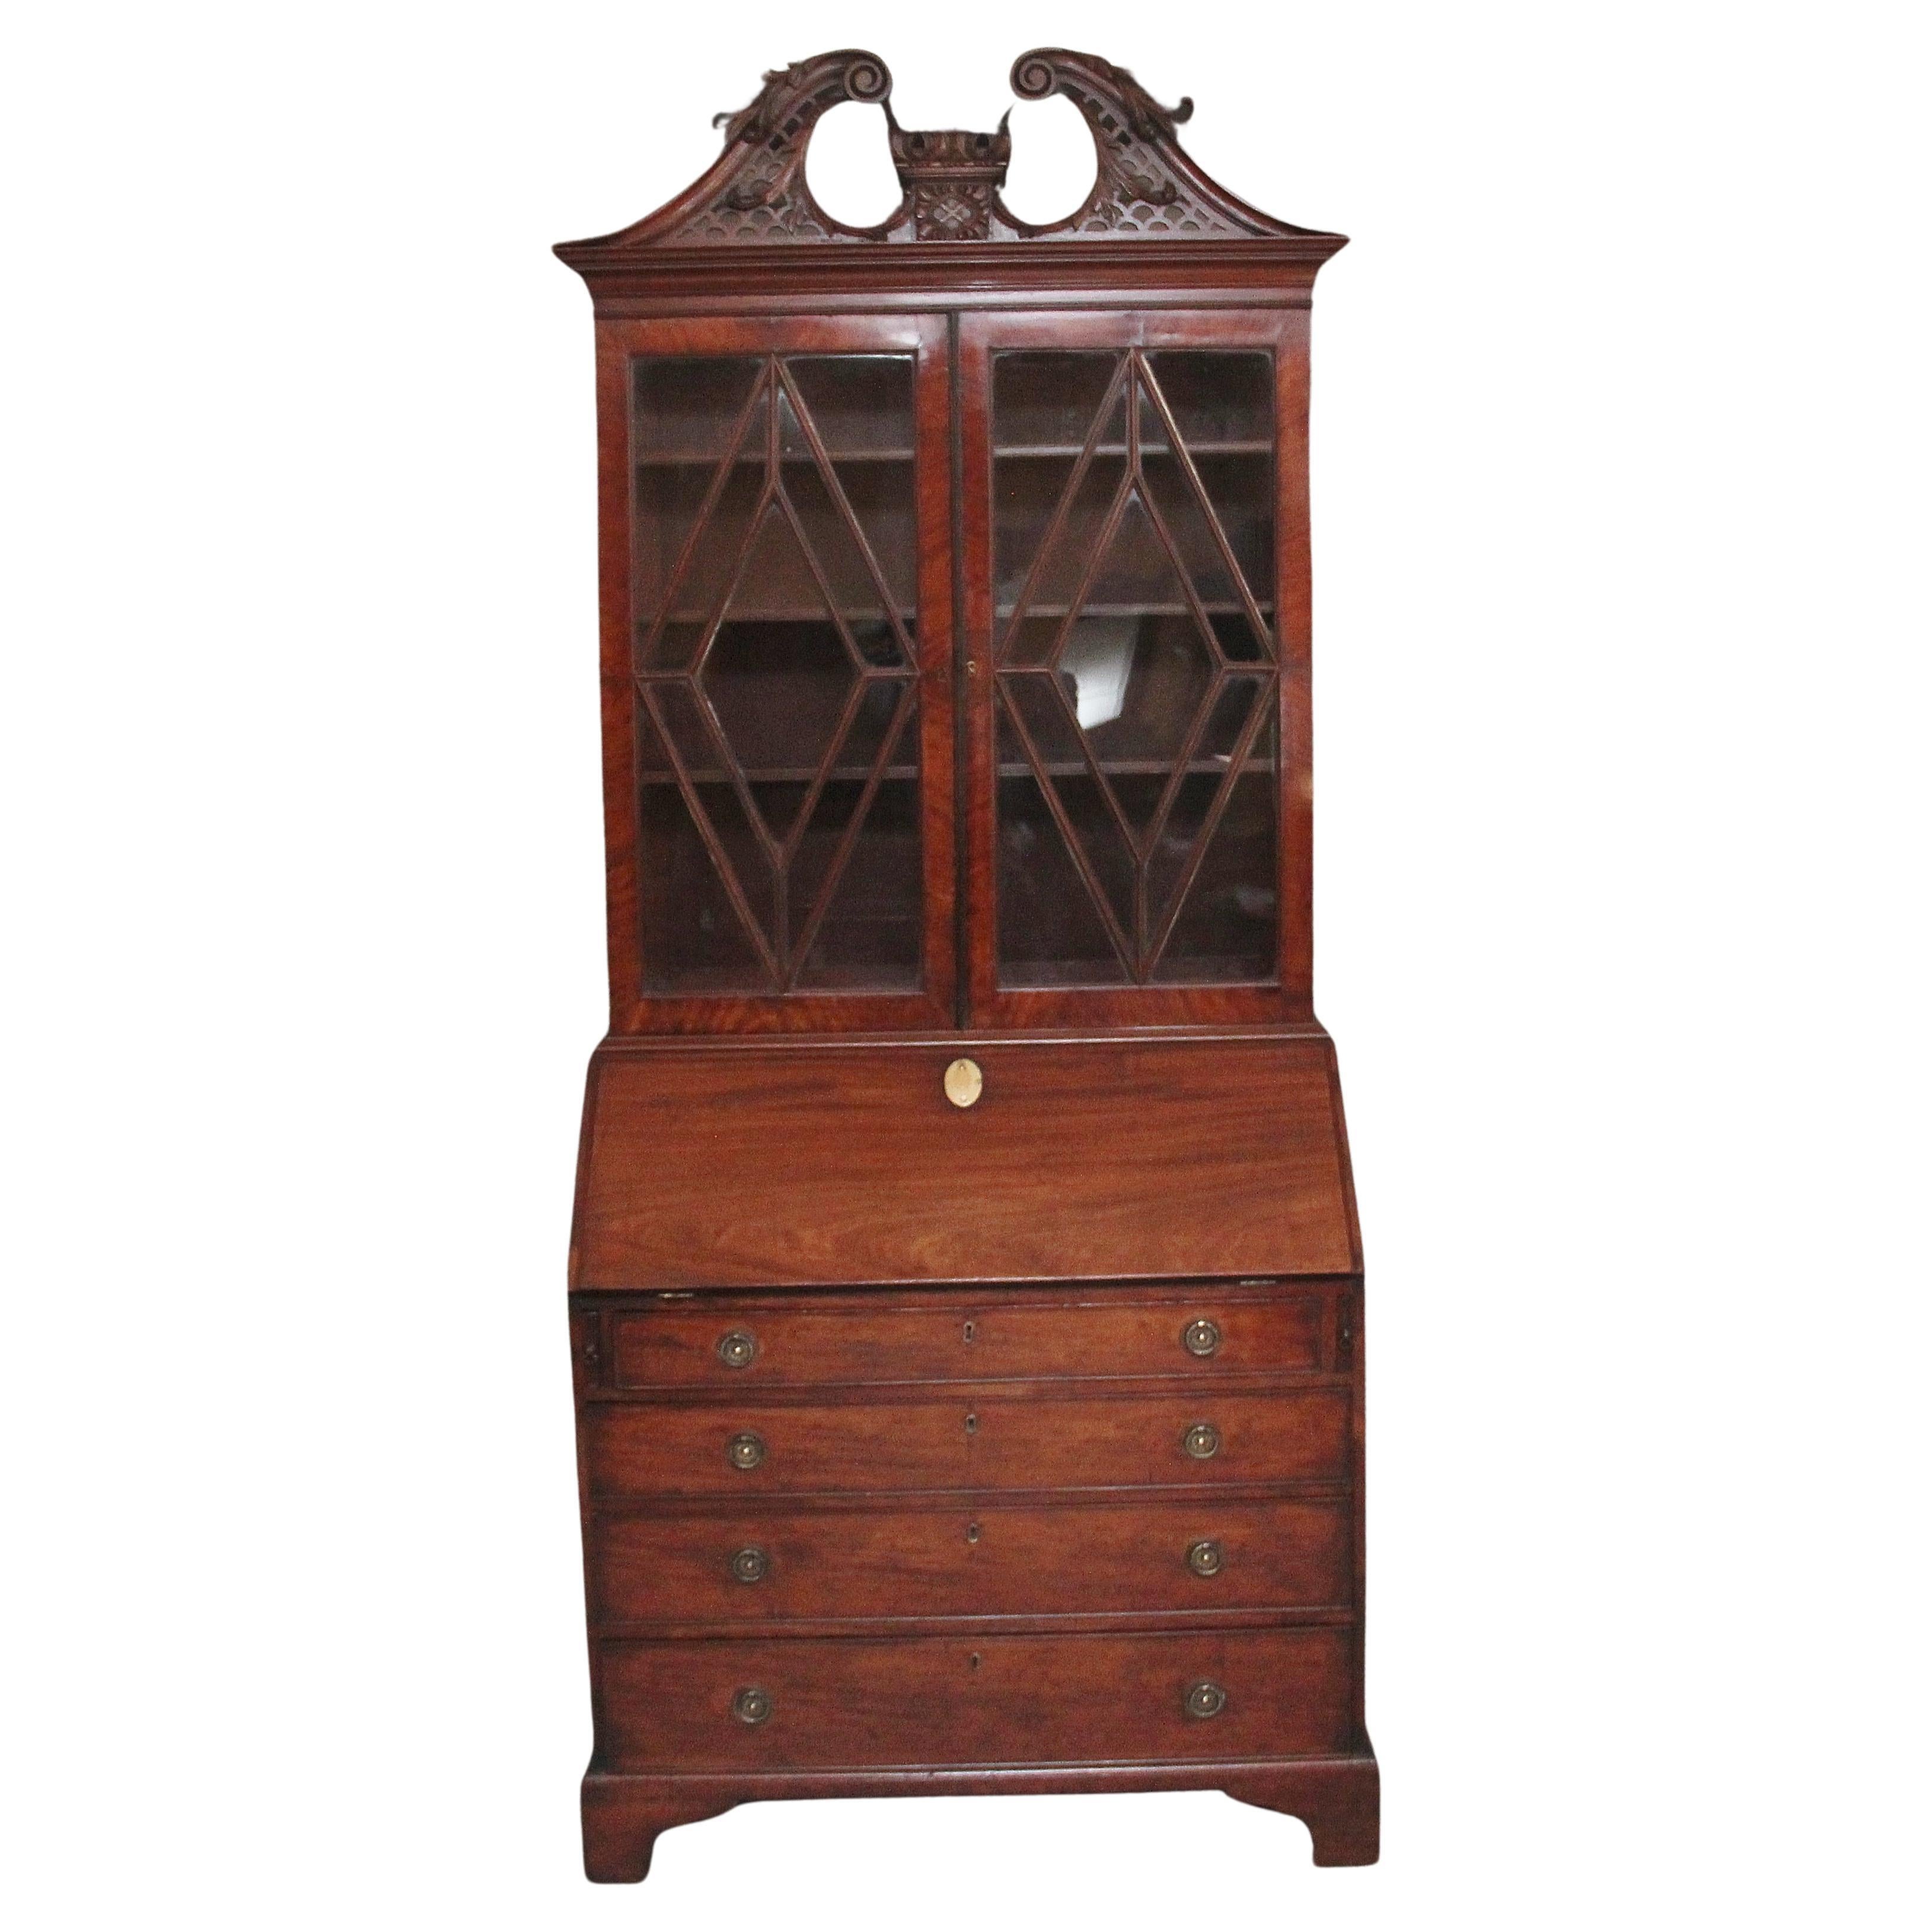 Early 19th Century mahogany bureau bookcase